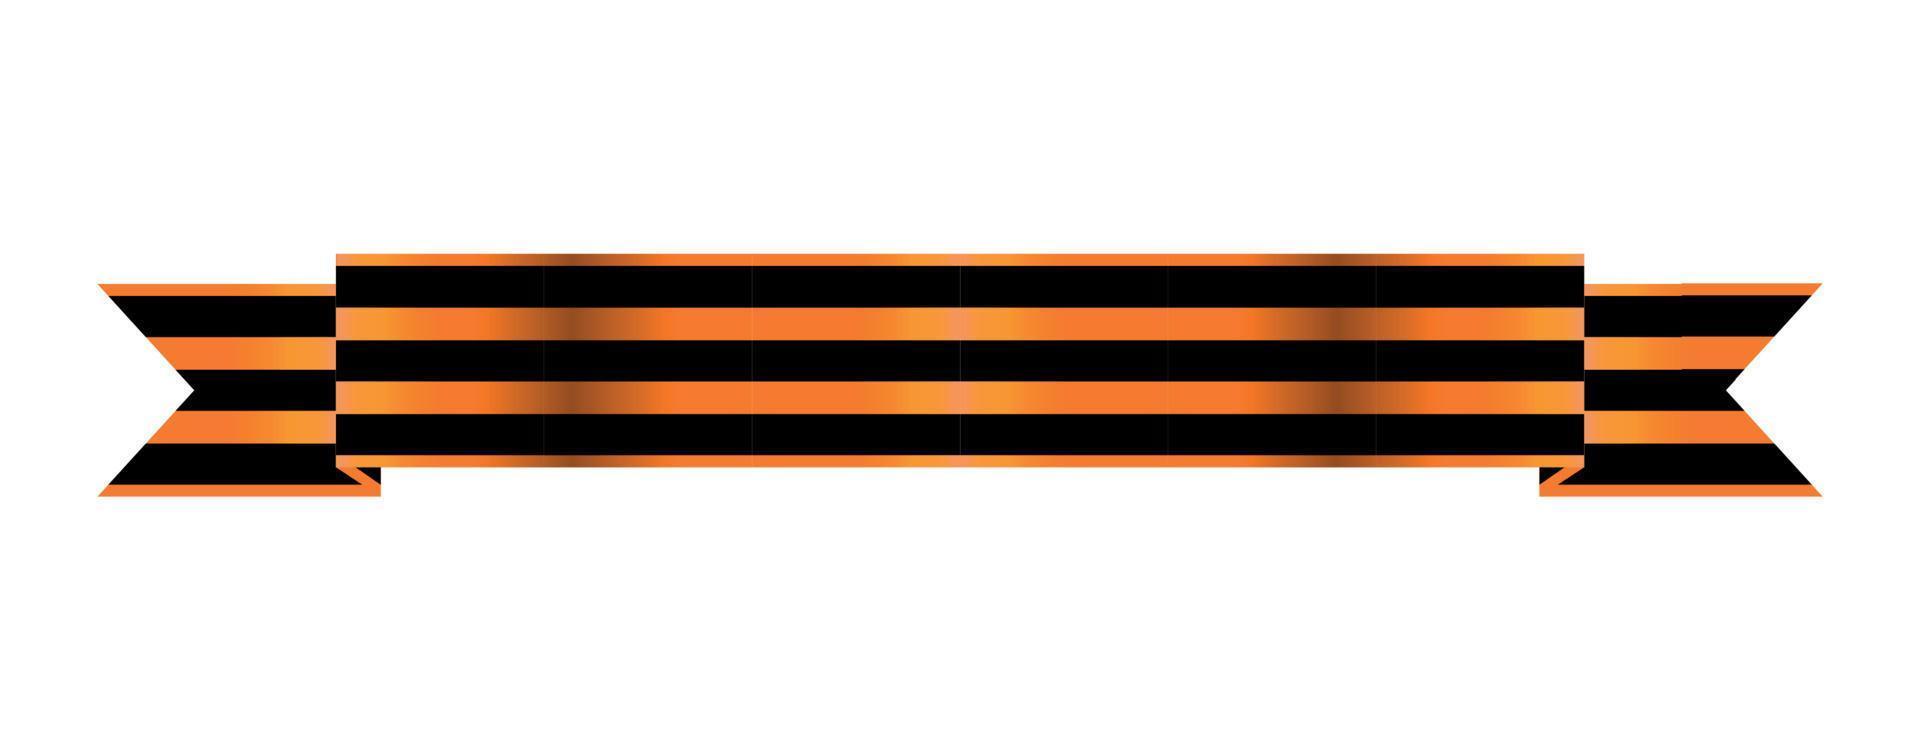 ruban bicolore de l'ordre de st. George. pour service et bravoure. illustration vectorielle. vecteur